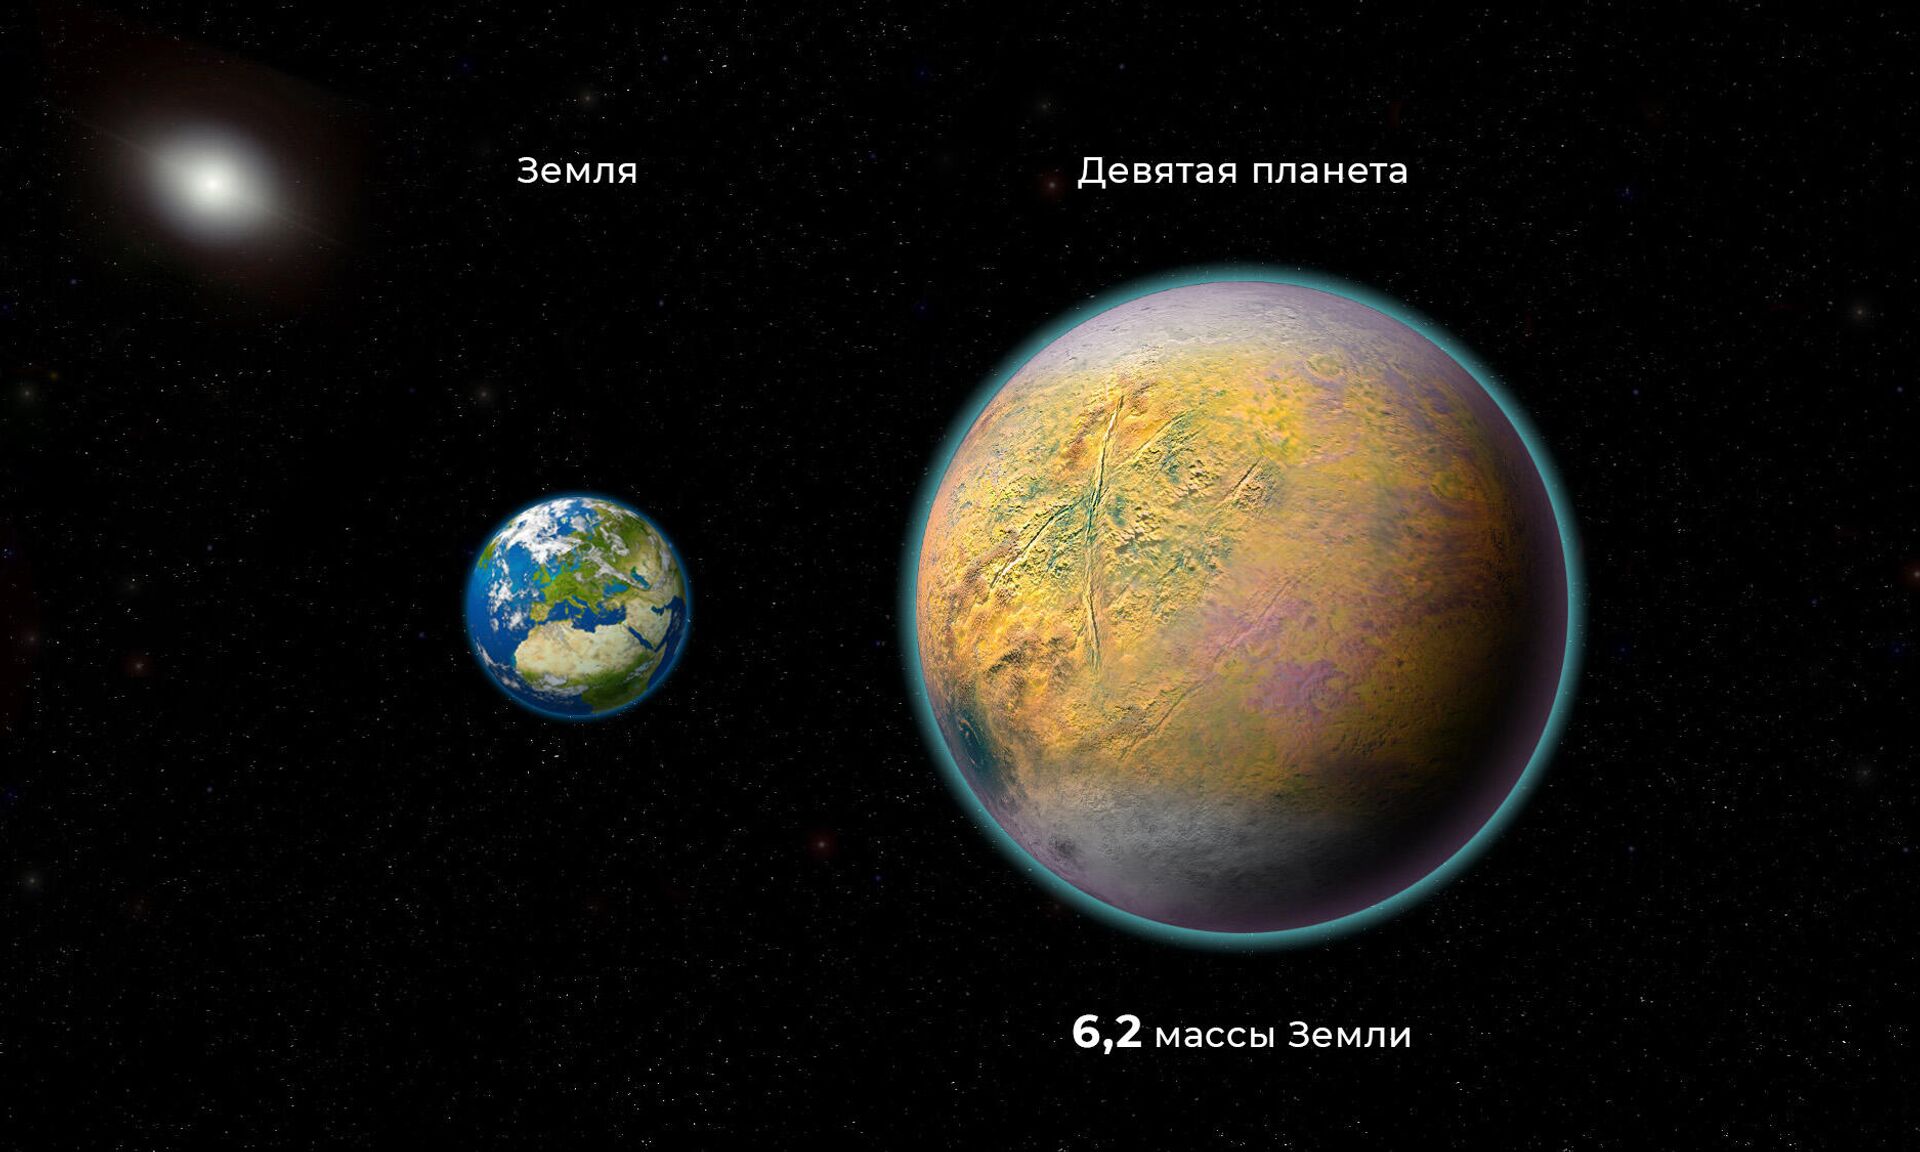 Сравнение размеров Земли и Девятой планеты - РИА Новости, 1920, 15.09.2021